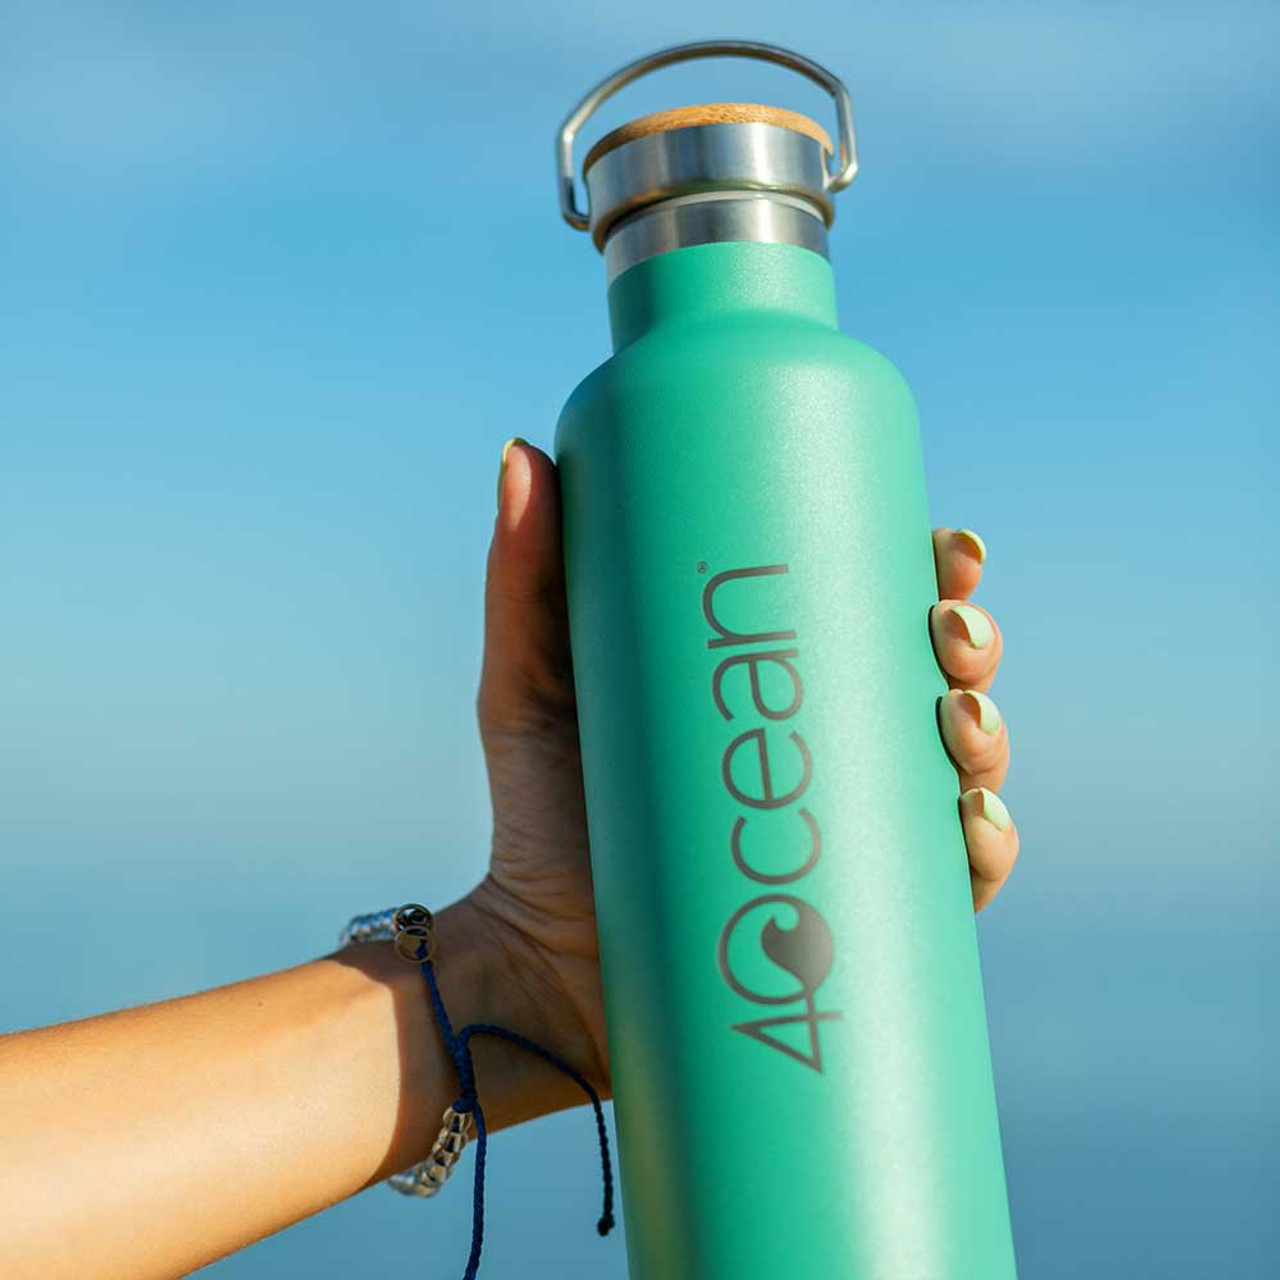 4ocean Reusable Insulated Water Bottle - Light Blue